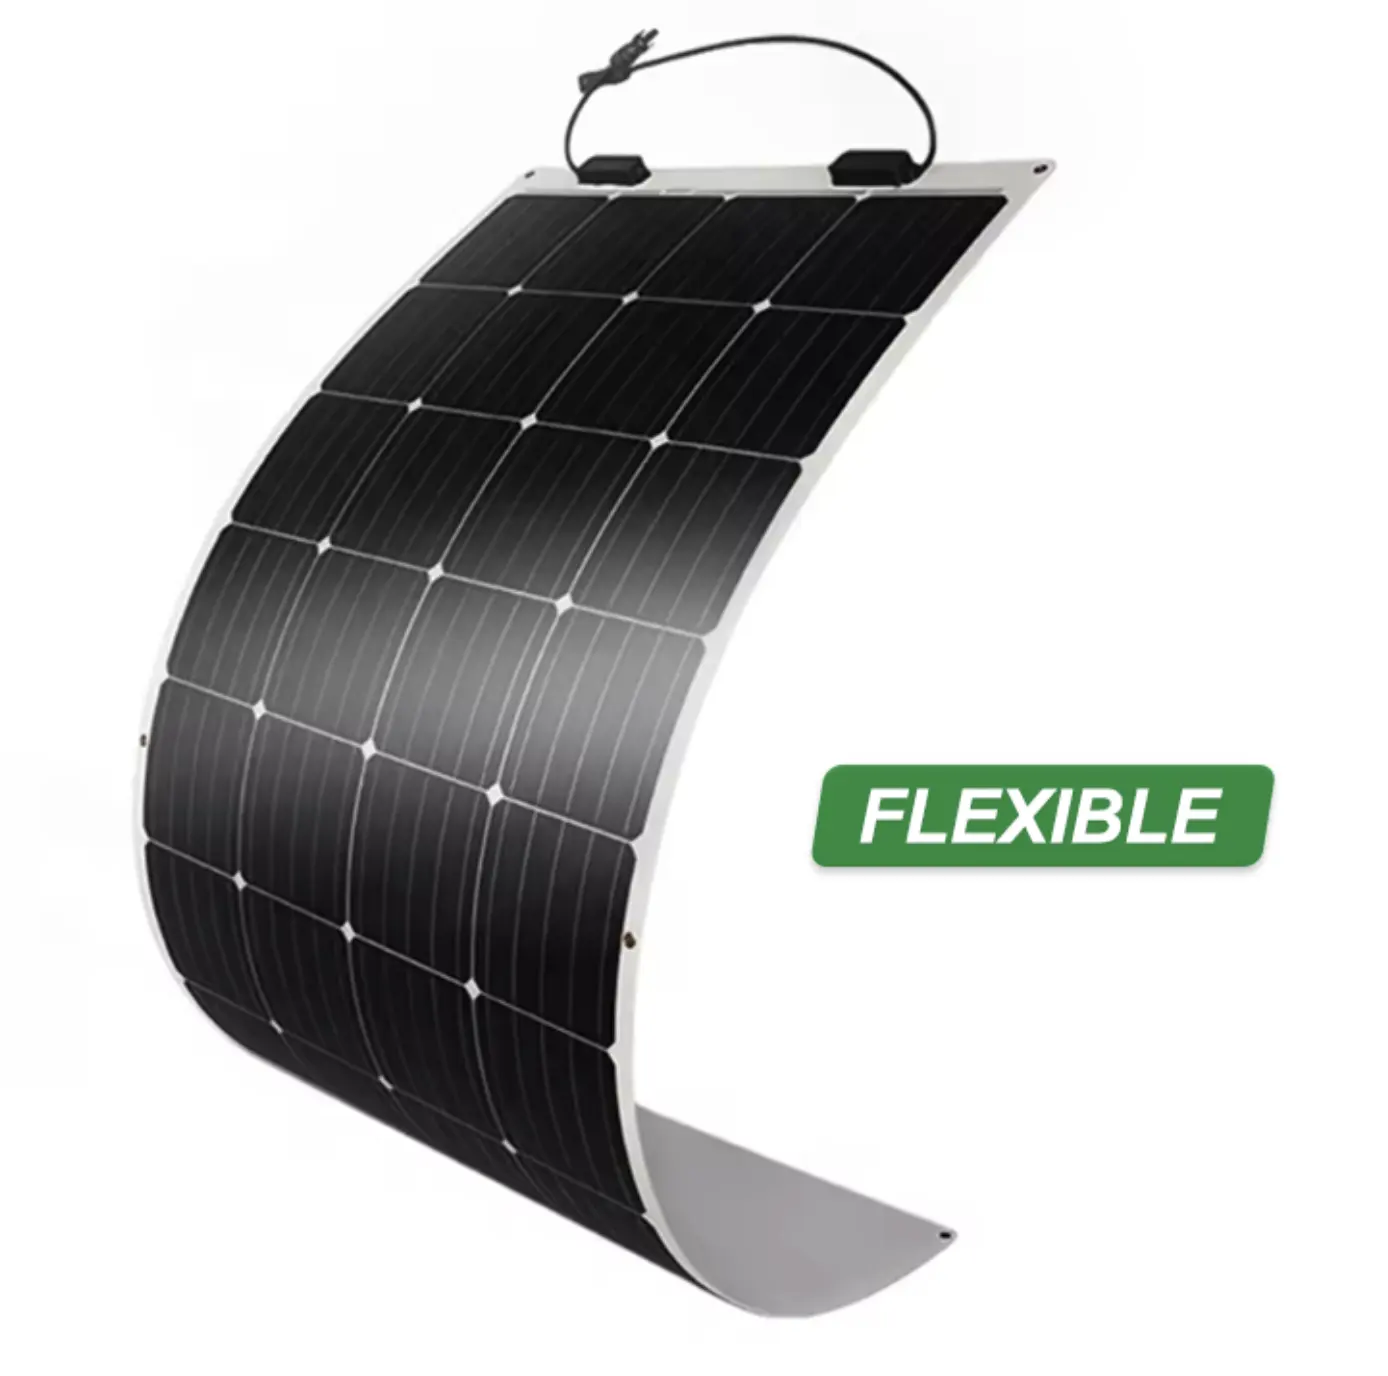 Grosir rollable film tipis fleksibel penggunaan rumah atap panel surya panel surya solares cospo panel surya fleksibel